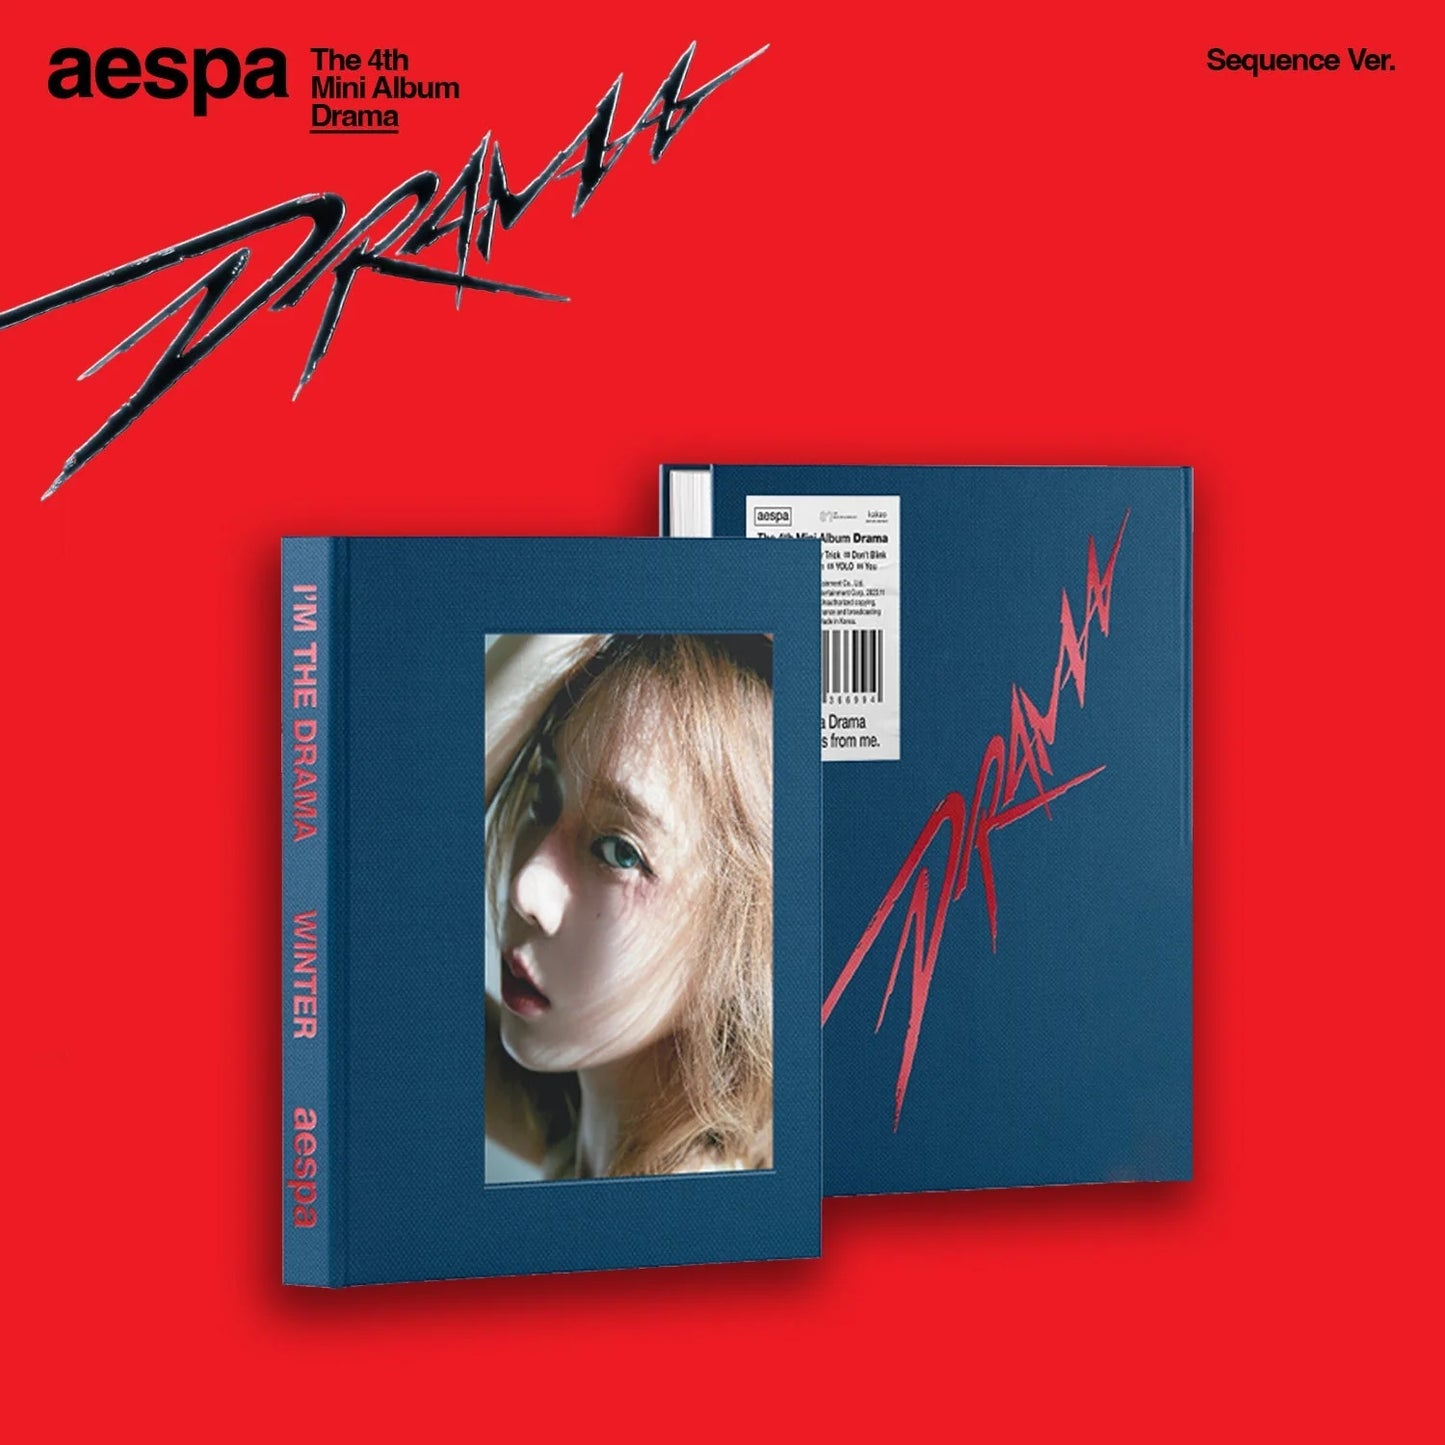 Aespa 4th Mini Album: Drama (Sequence Version)